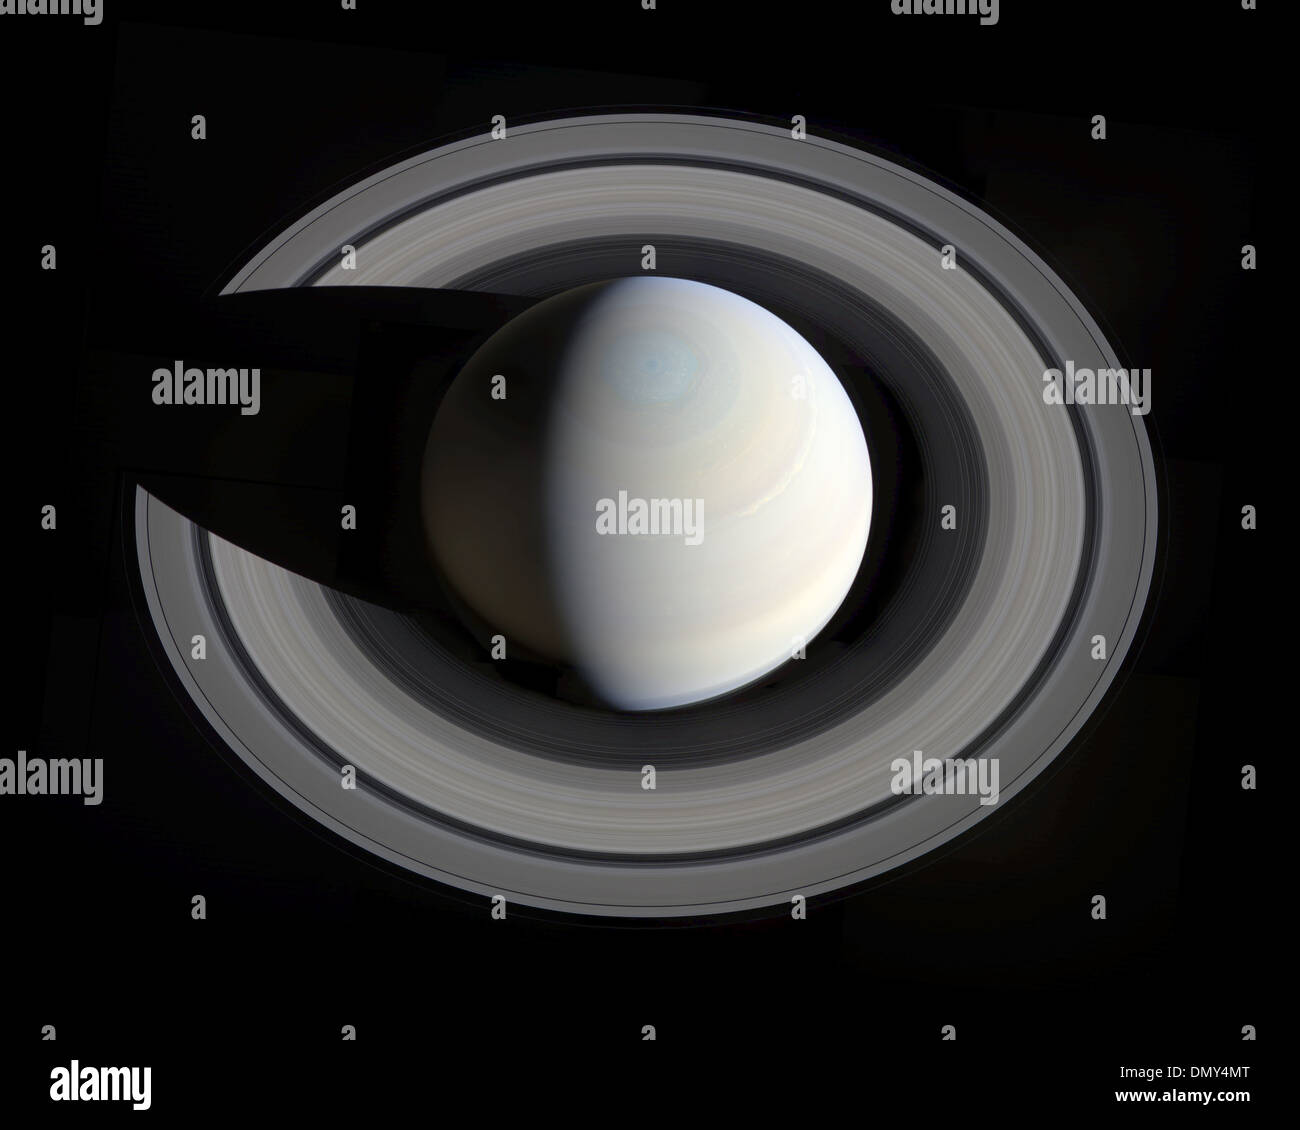 Saturn, Cassini spacecraft, Oct. 10, 2013 Stock Photo